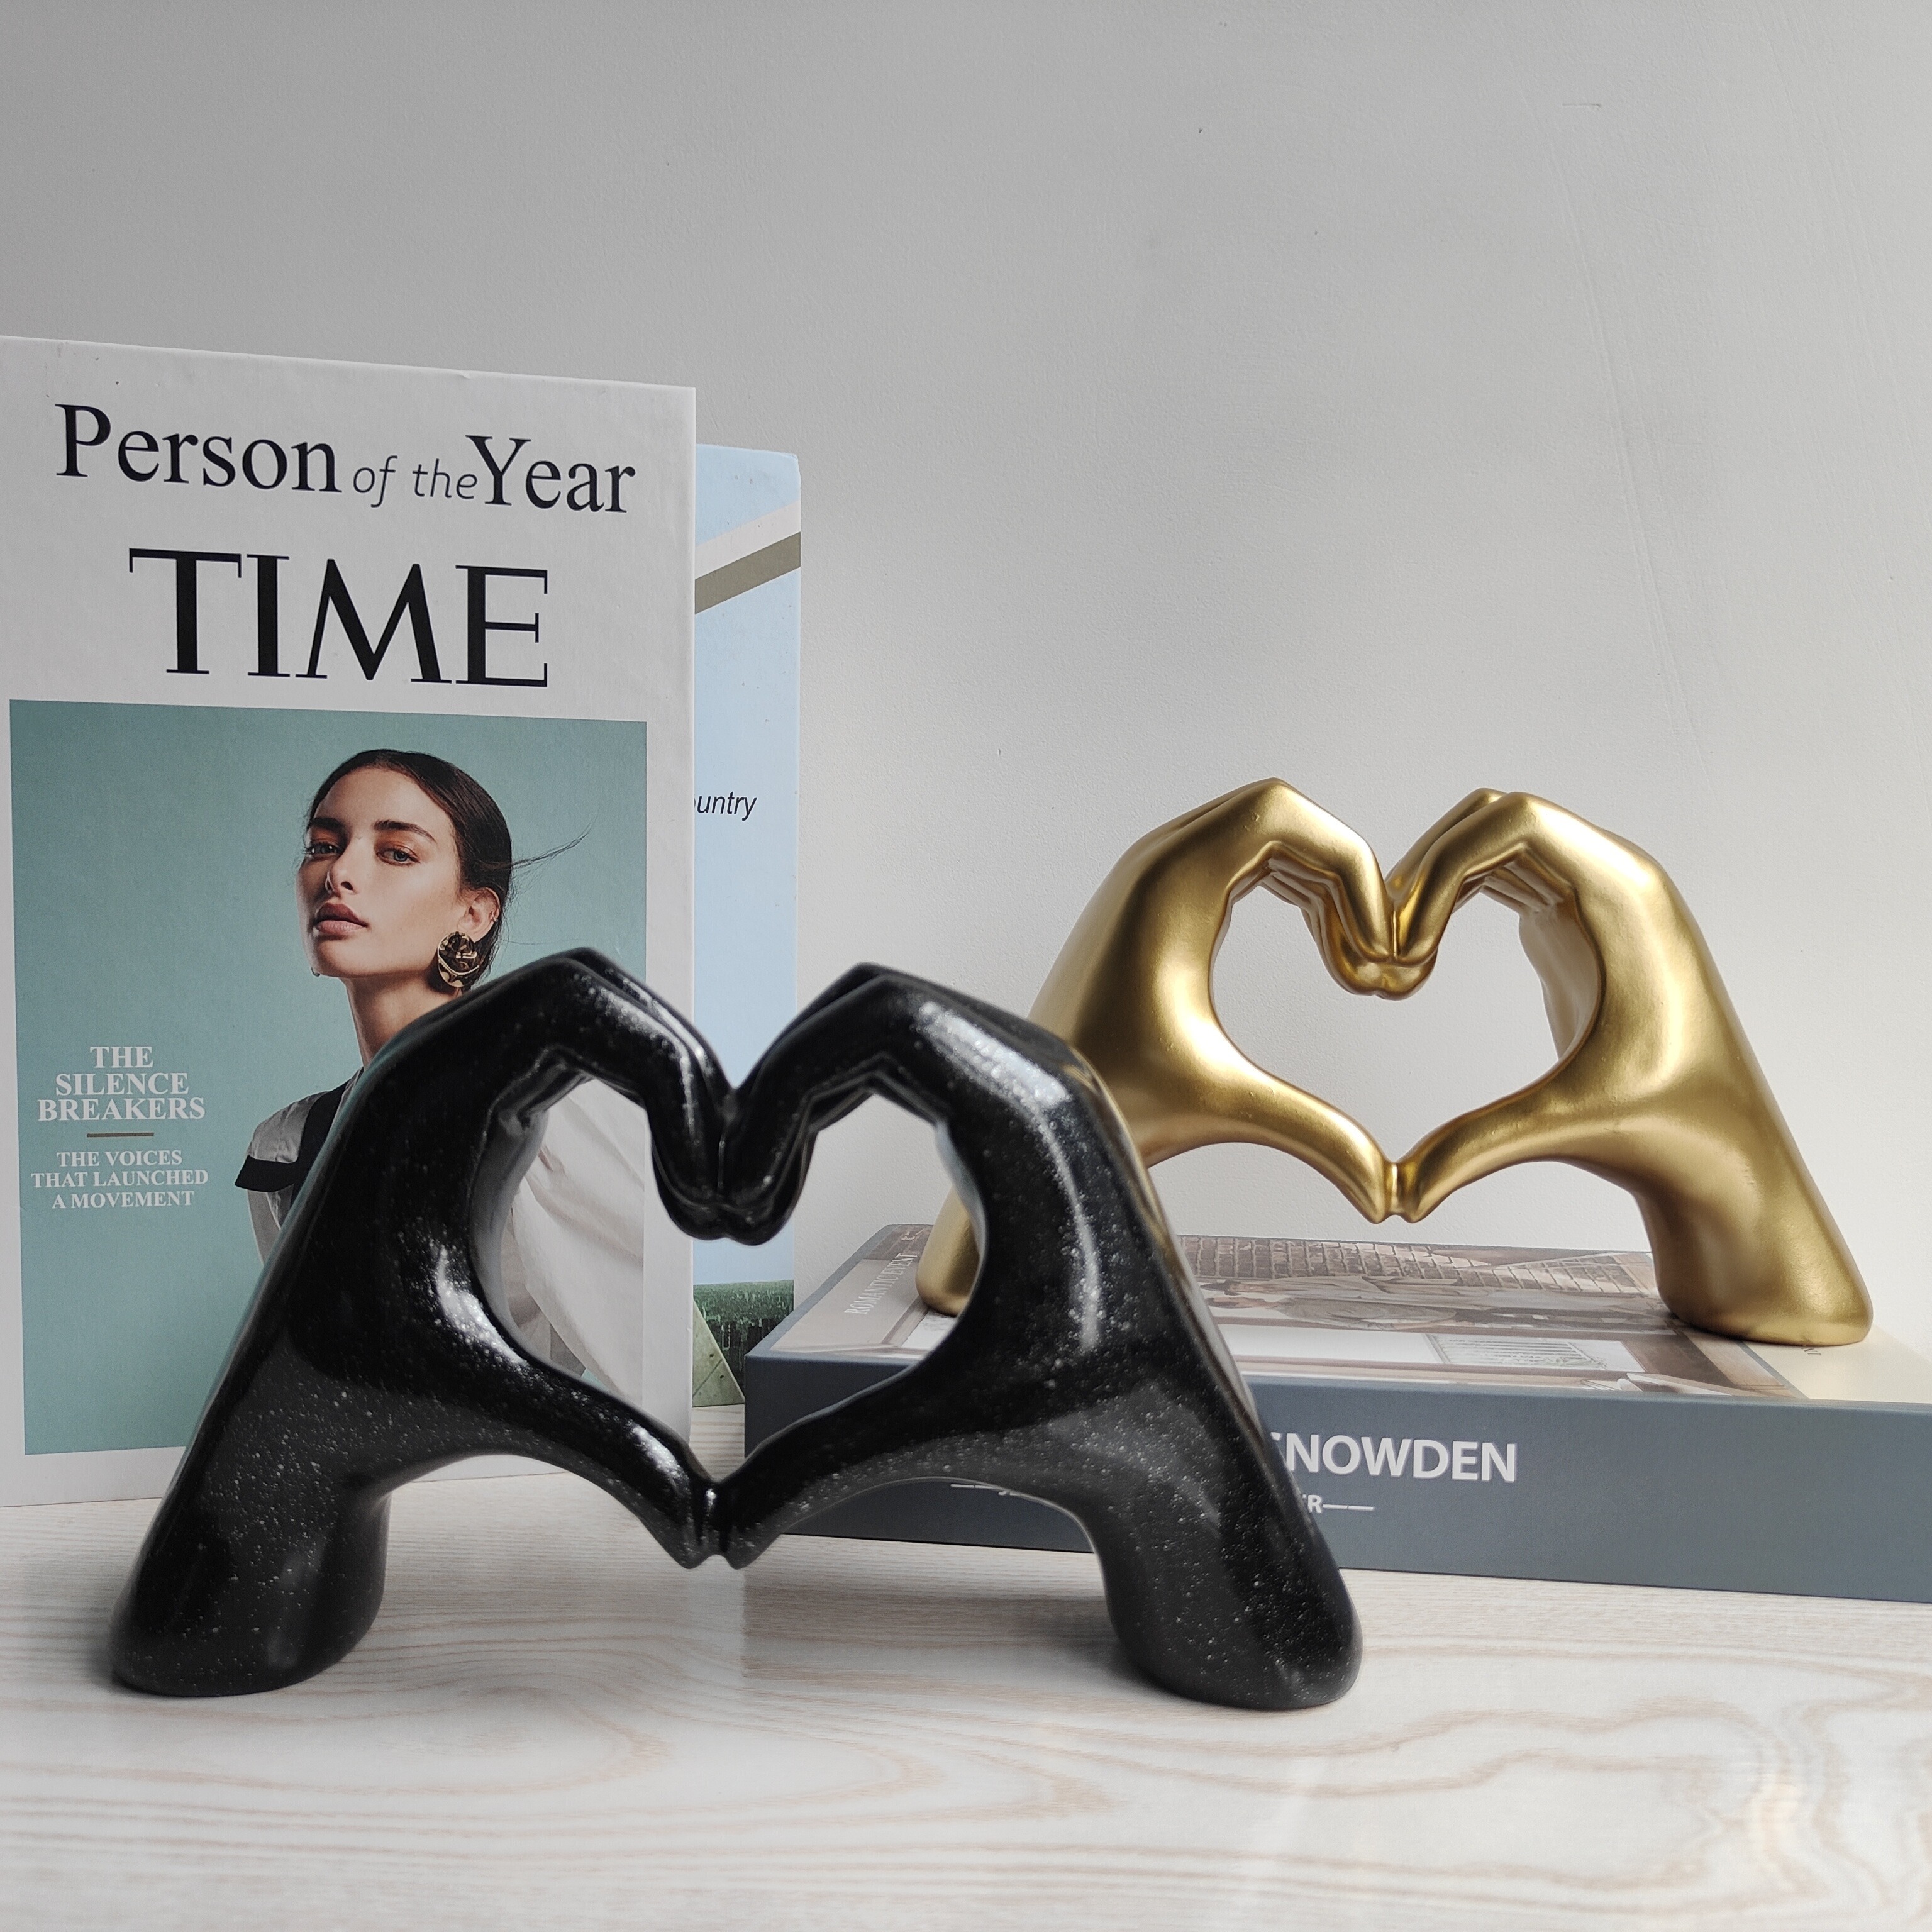  Heart Hands Sculpture Resin Gold Heart Hands Decor